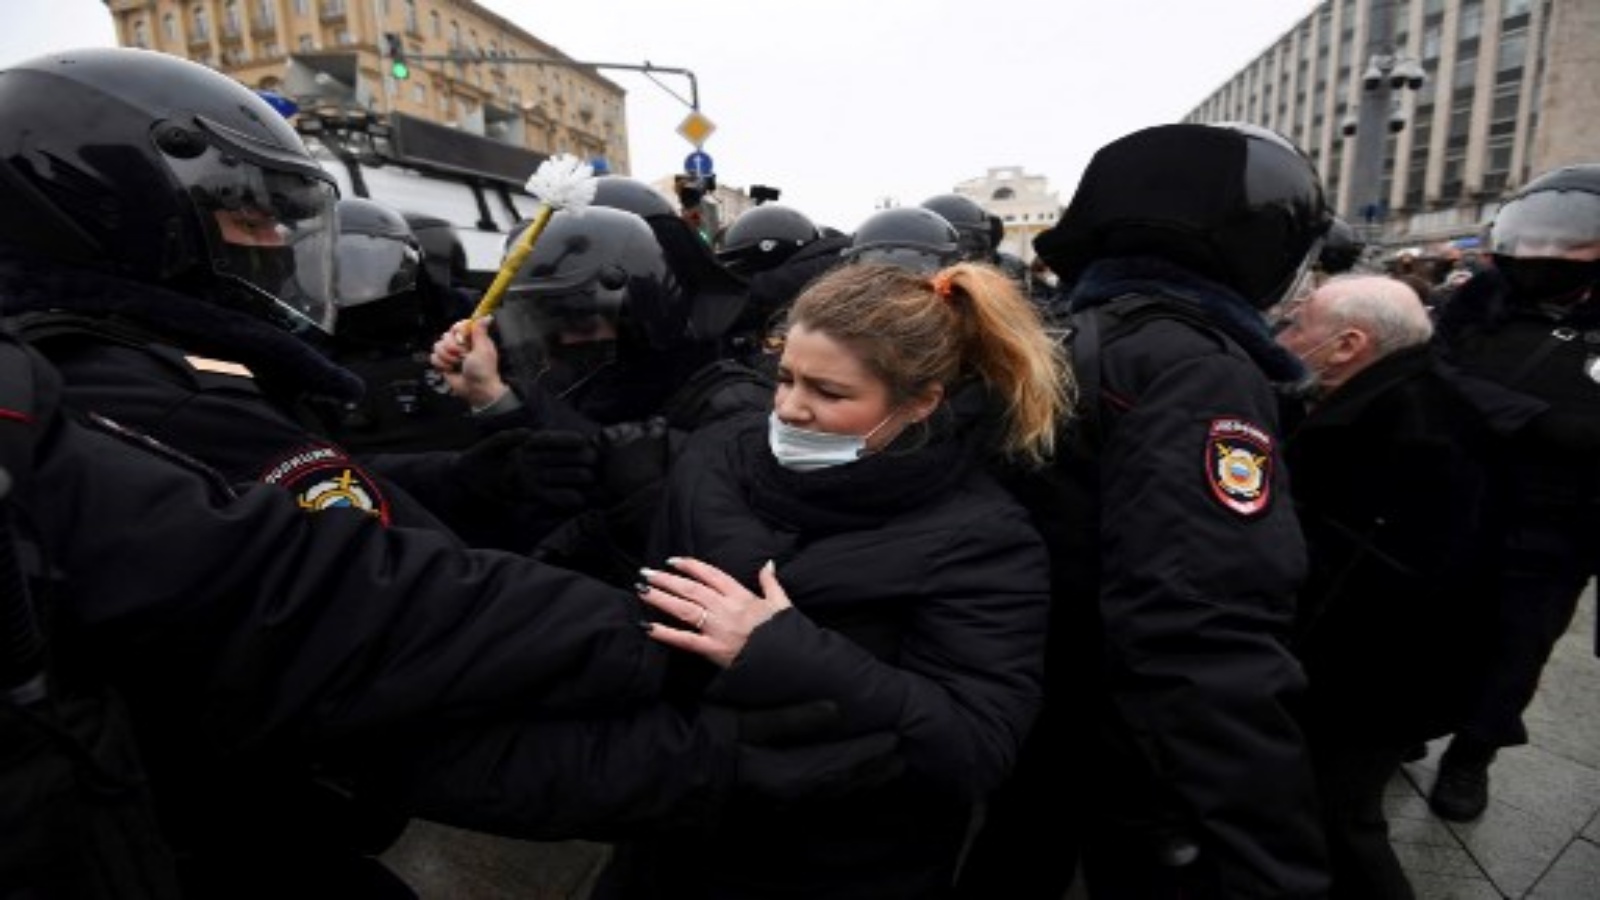 الشرطة تحتجز متظاهرين خلال تجمع حاشد لدعم زعيم المعارضة المسجون أليكسي نافالني في وسط مدينة موسكو في 23 يناير 2021